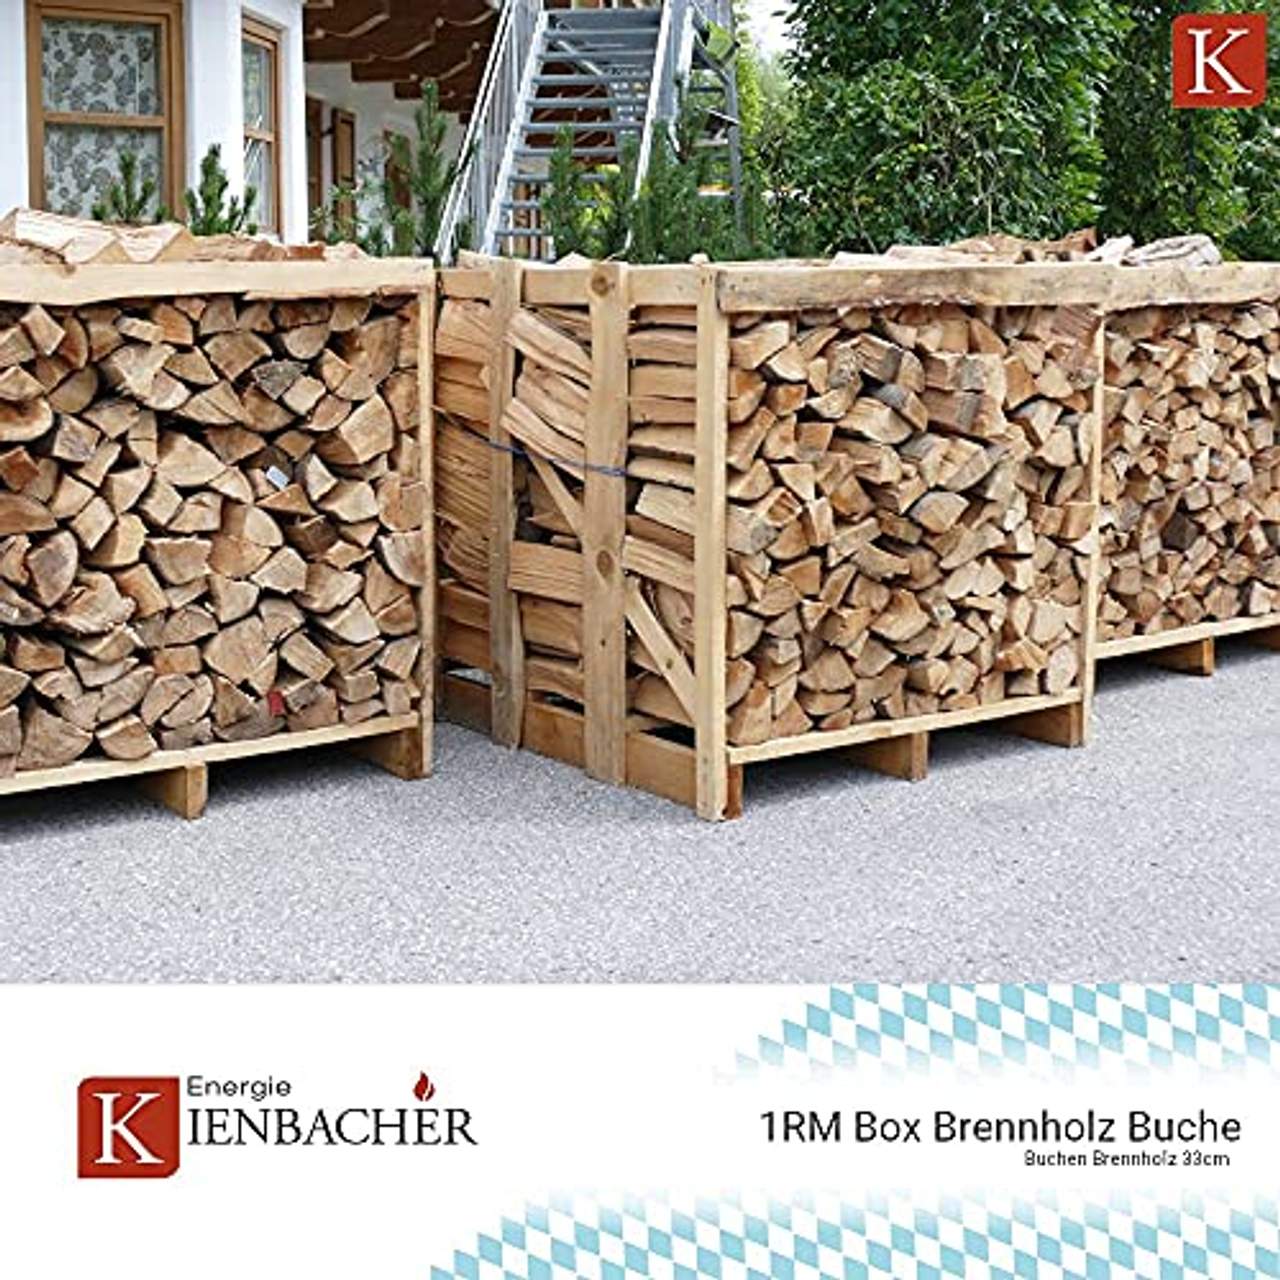 Buche 33cm RM Box Brennholz trocken Kaminholz ofenfertig Holz